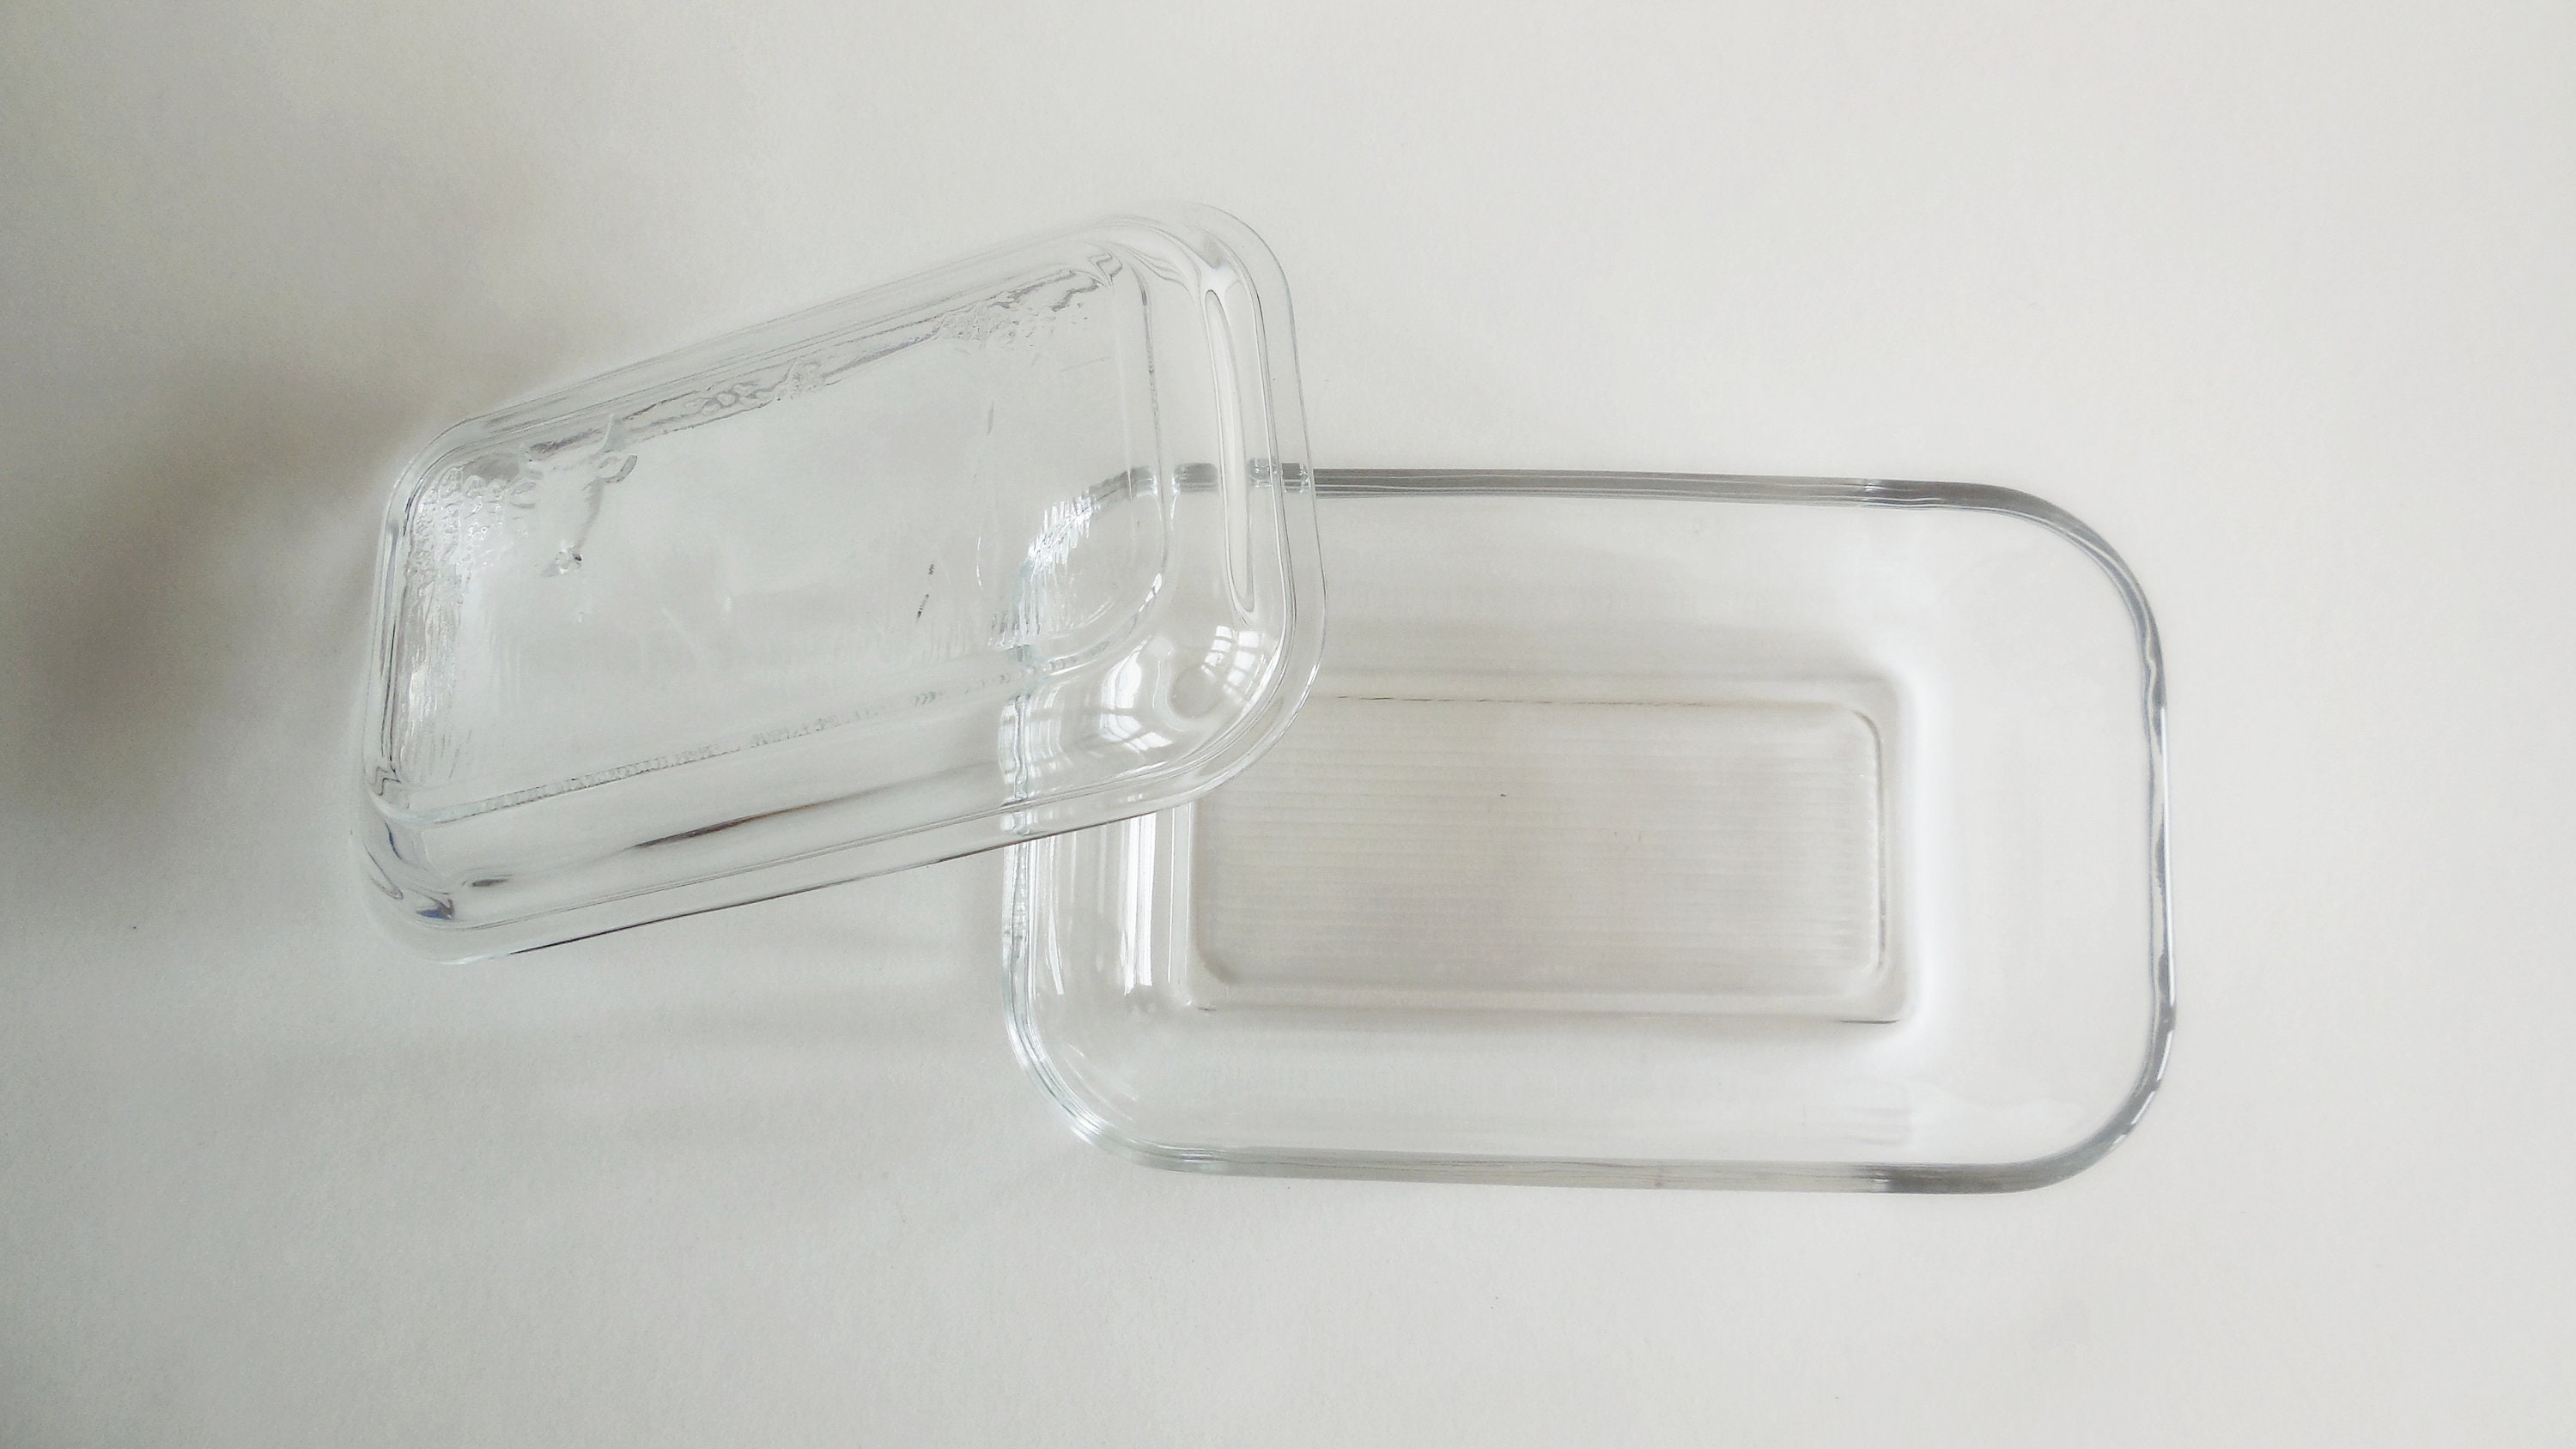 Beurrier en verre, décor tête de vache. Années 1960 - 1980 vintage old  french butter glasses box